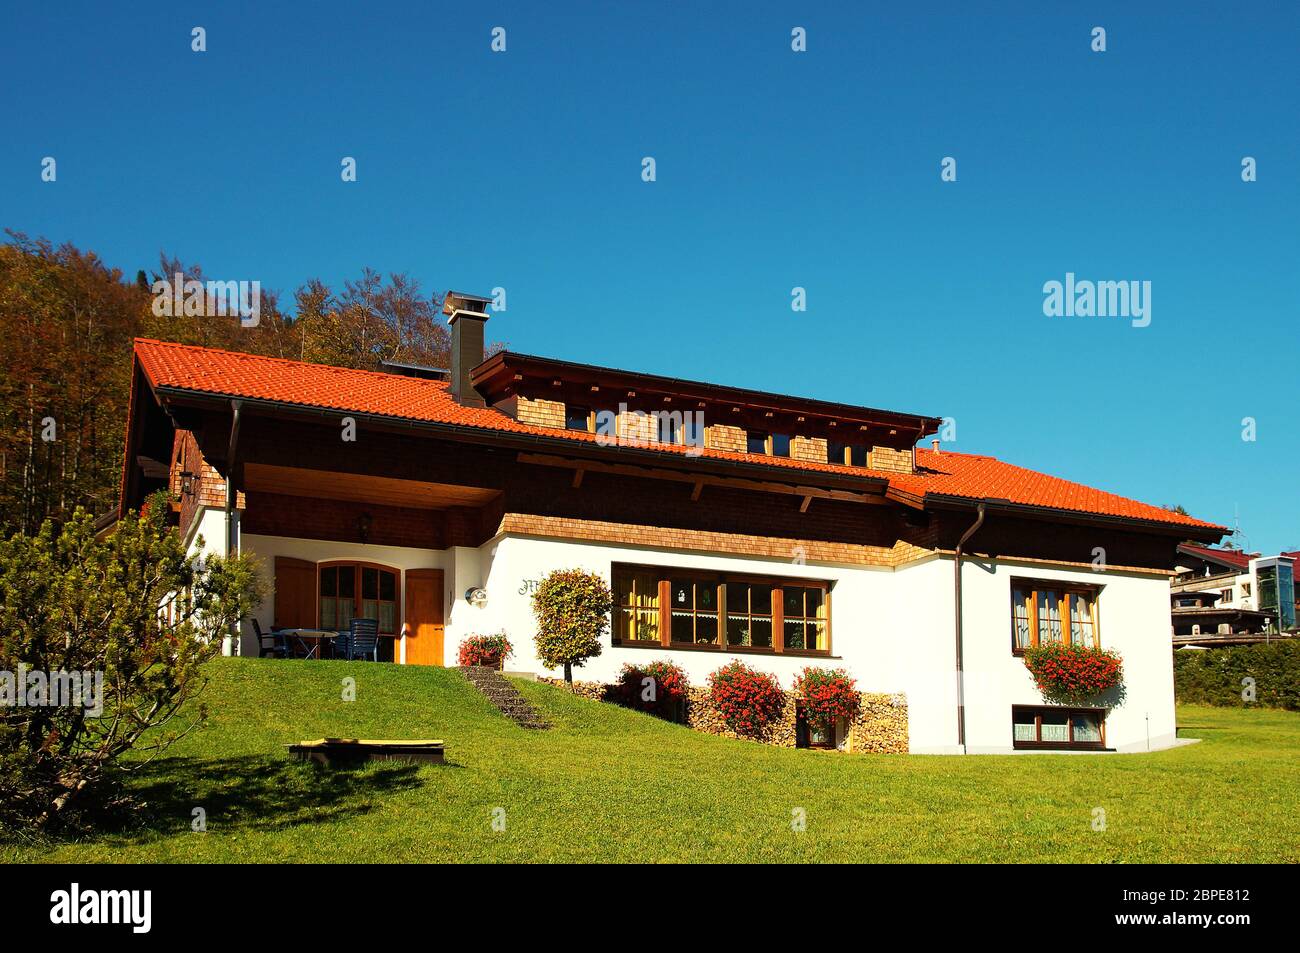 Einfamilienhaus / single family house Stock Photo